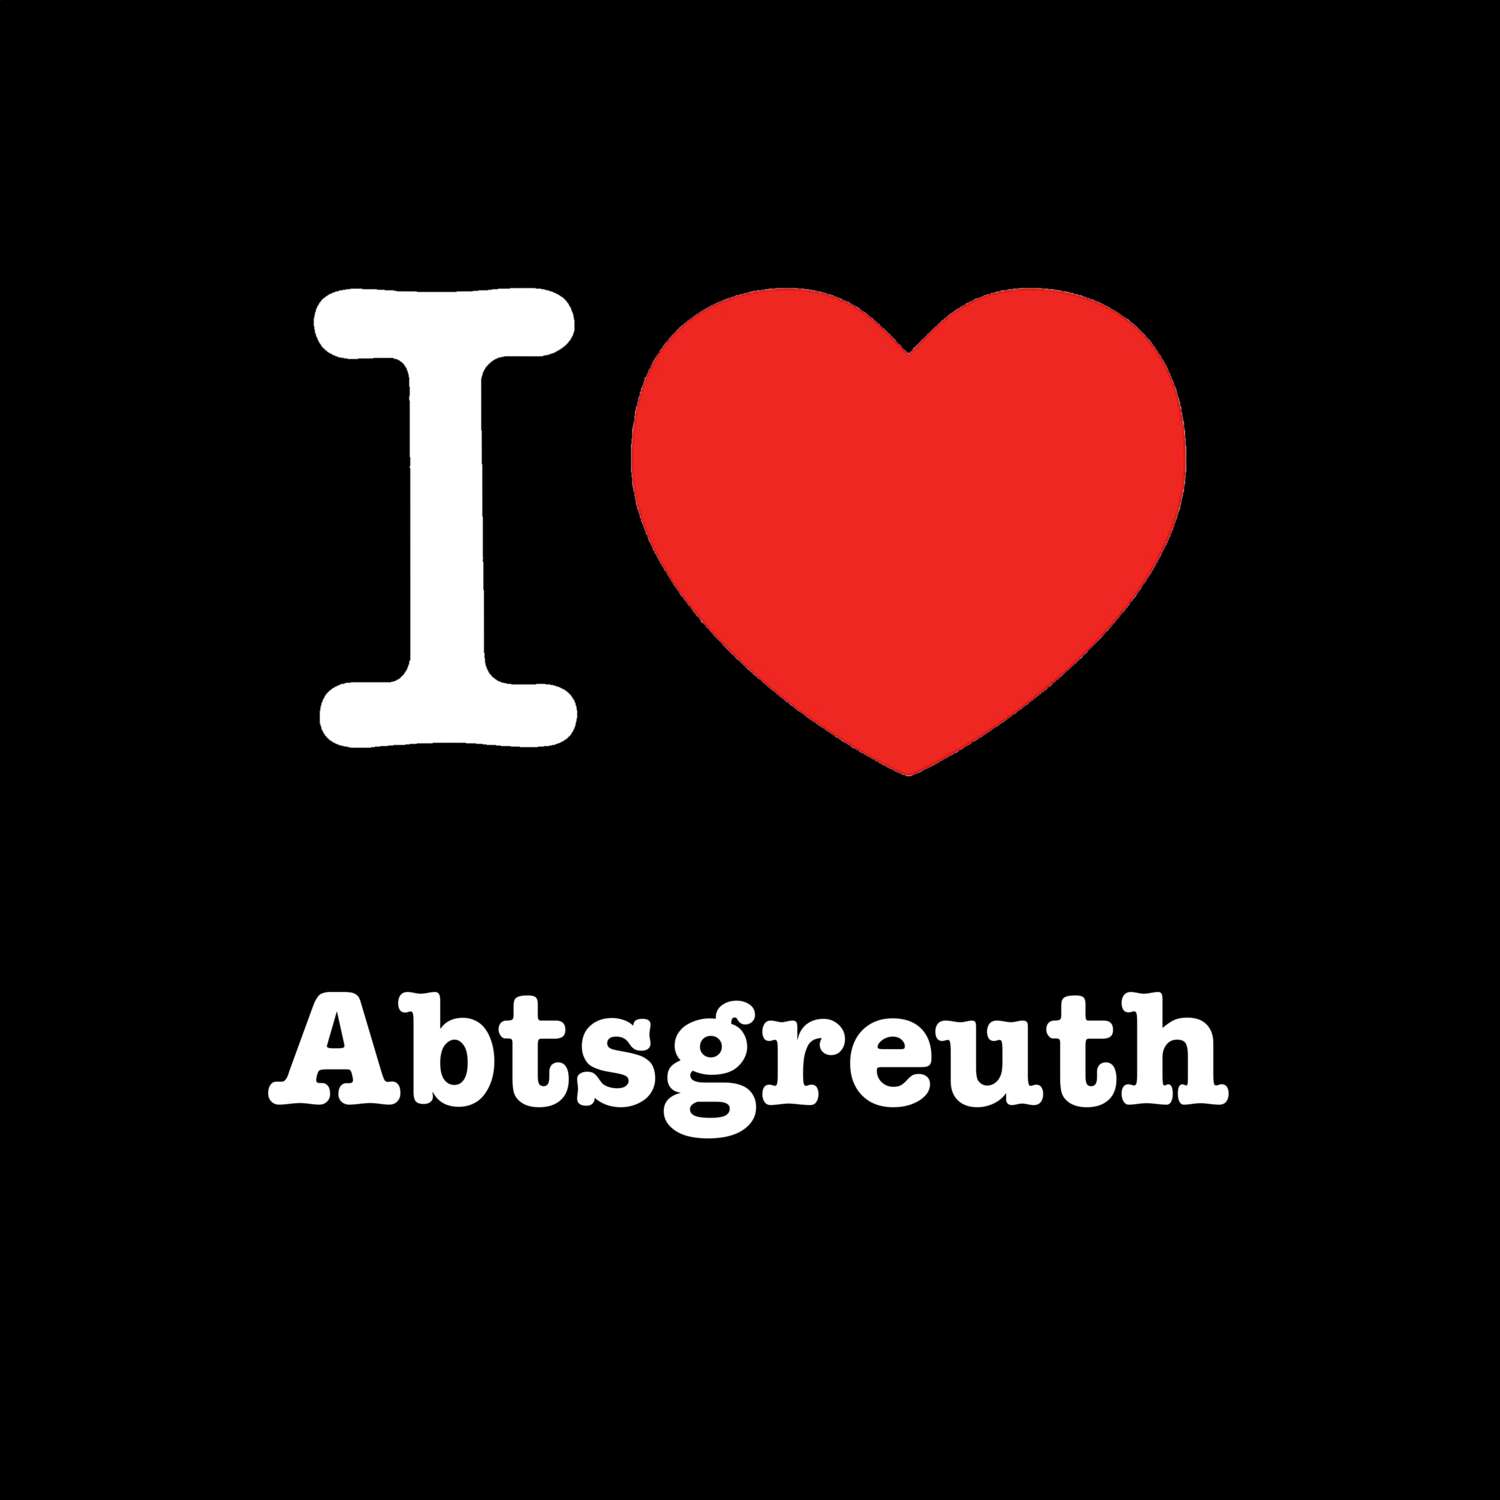 Abtsgreuth T-Shirt »I love«